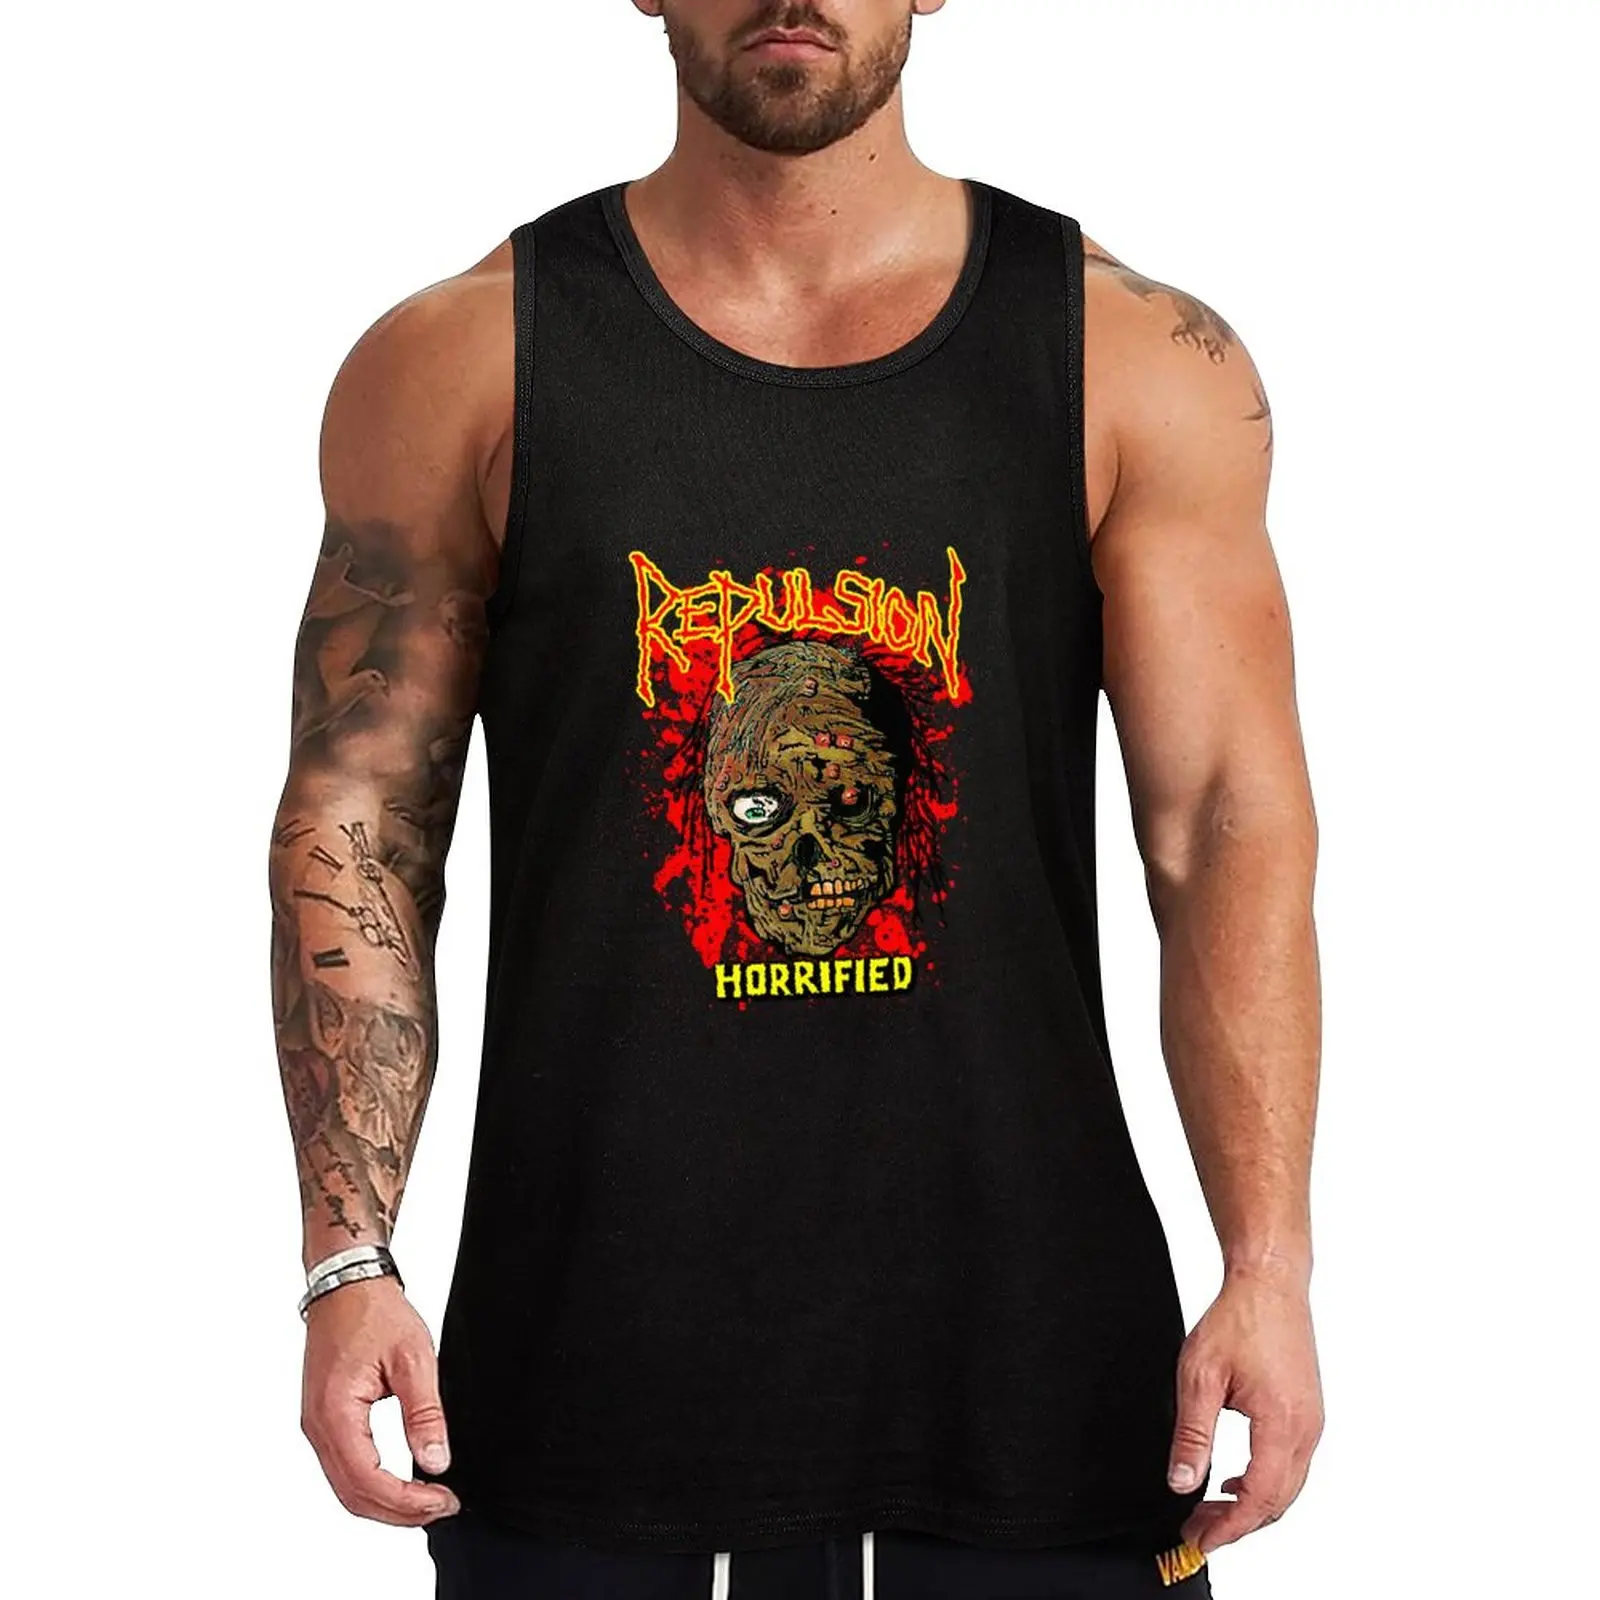 

New Repulsion - Horrified Classic Old School Death Metal Tank Top bodybuilding Men's clothes essentials plain t-shirt